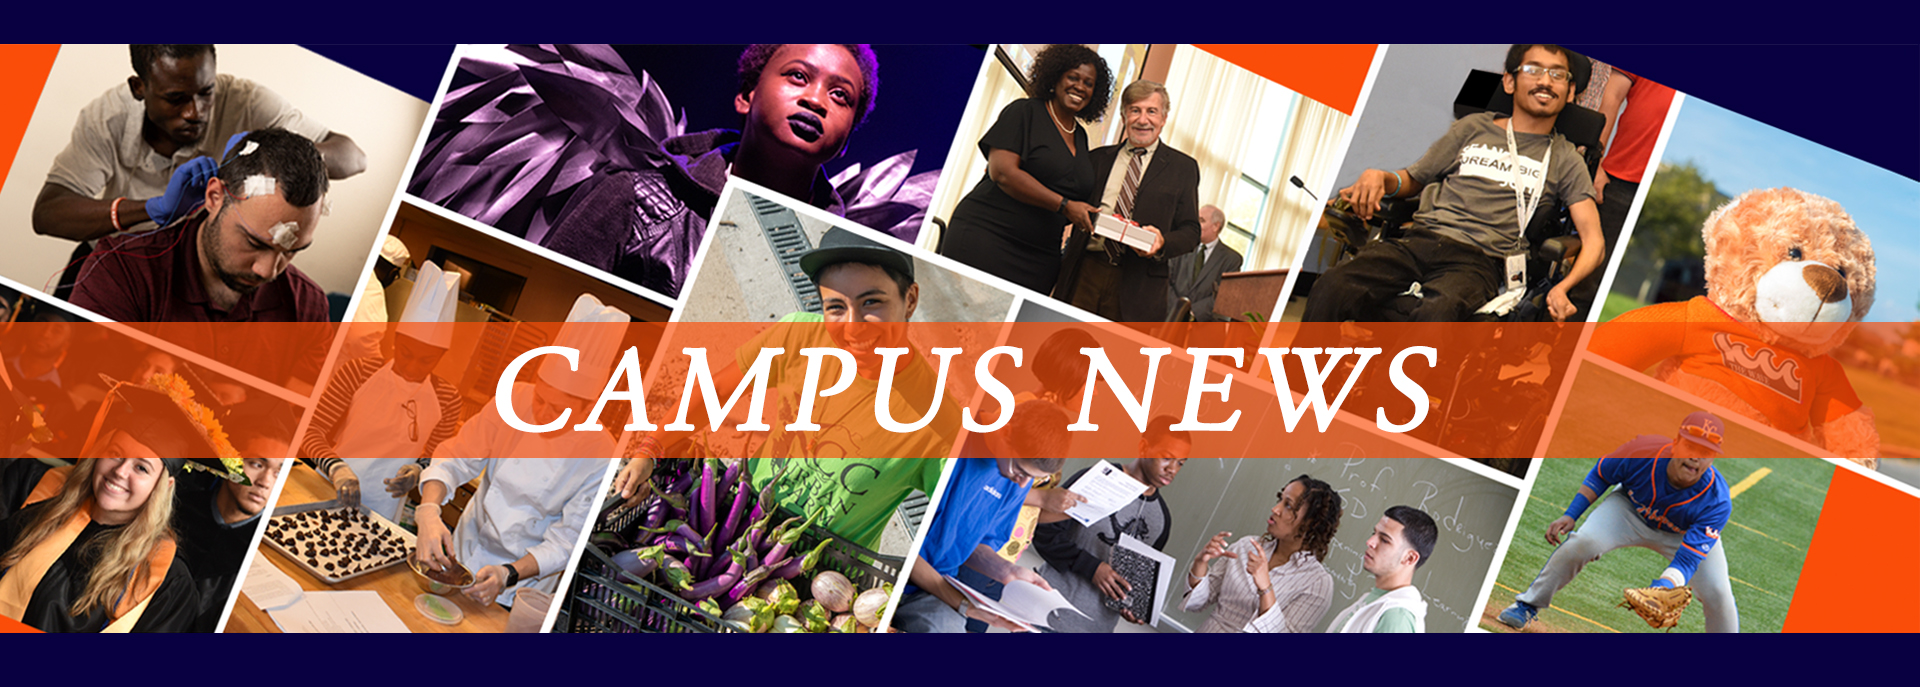 Campus News 